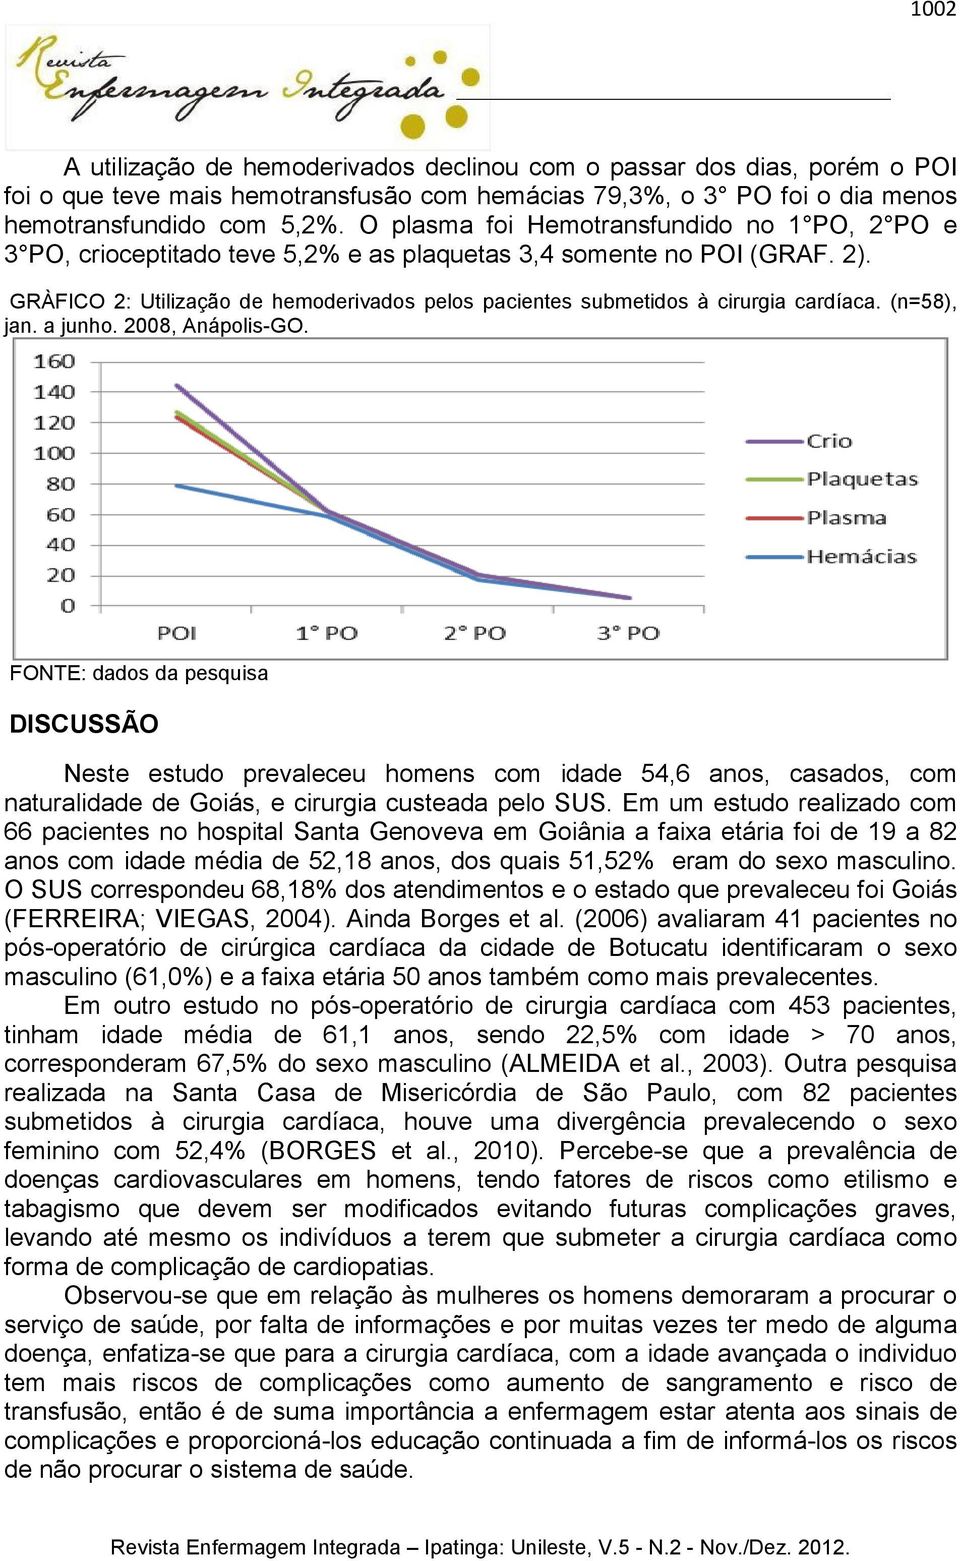 GRÀFICO 2: Utilização de hemoderivados pelos pacientes submetidos à cirurgia cardíaca. (n=58), jan. a junho. 2008, Anápolis-GO.